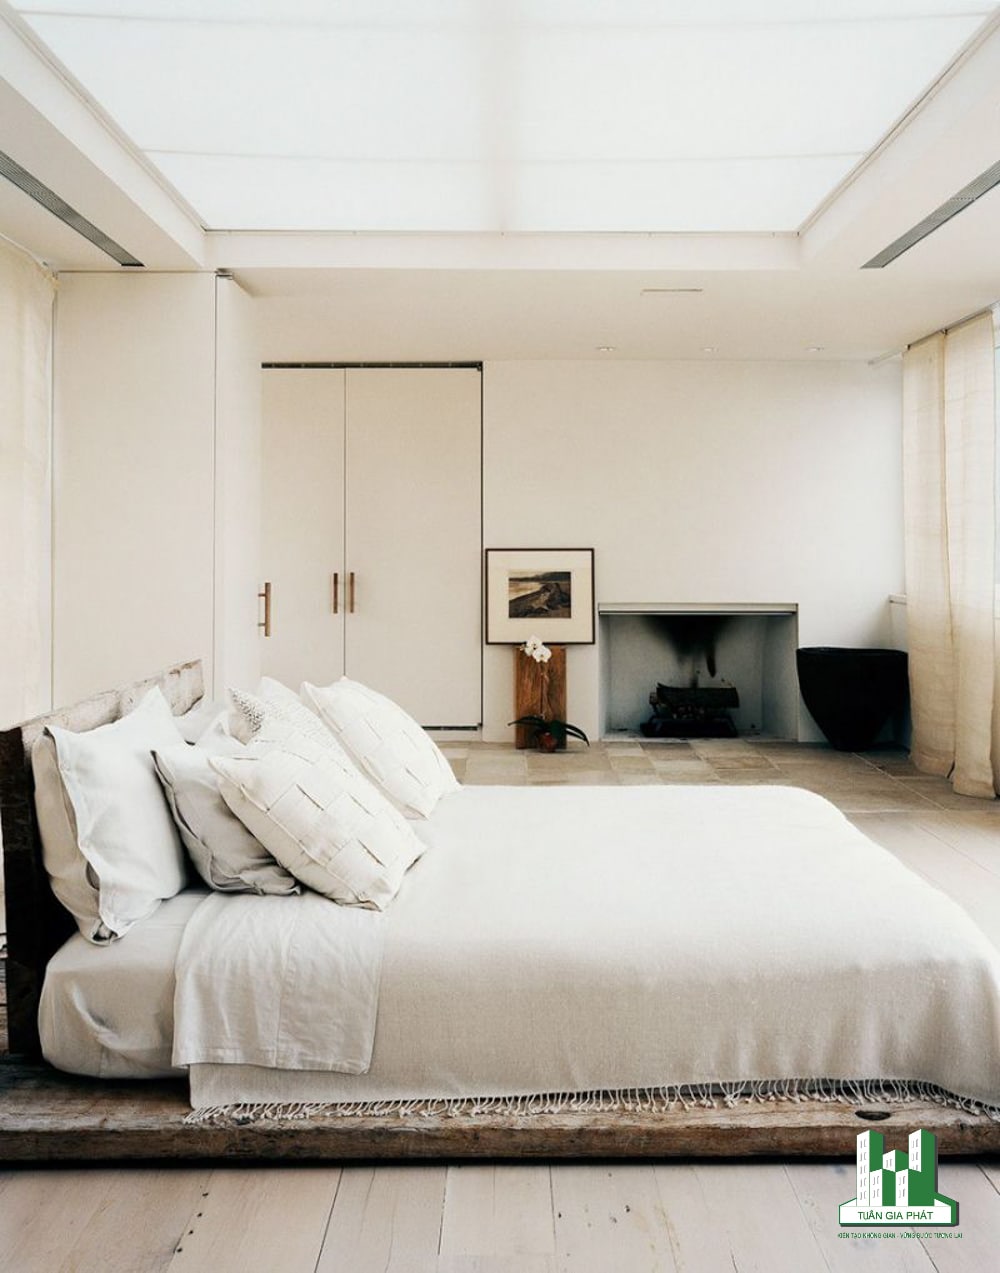 Phong cách thiền giản dị với giường đặt trên bệ gỗ, đồ nội thất tinh tế và lò sưởi âm tường, trần nhà bằng kính. Tất cả càng trông tối giản hơn với tone màu trắng.